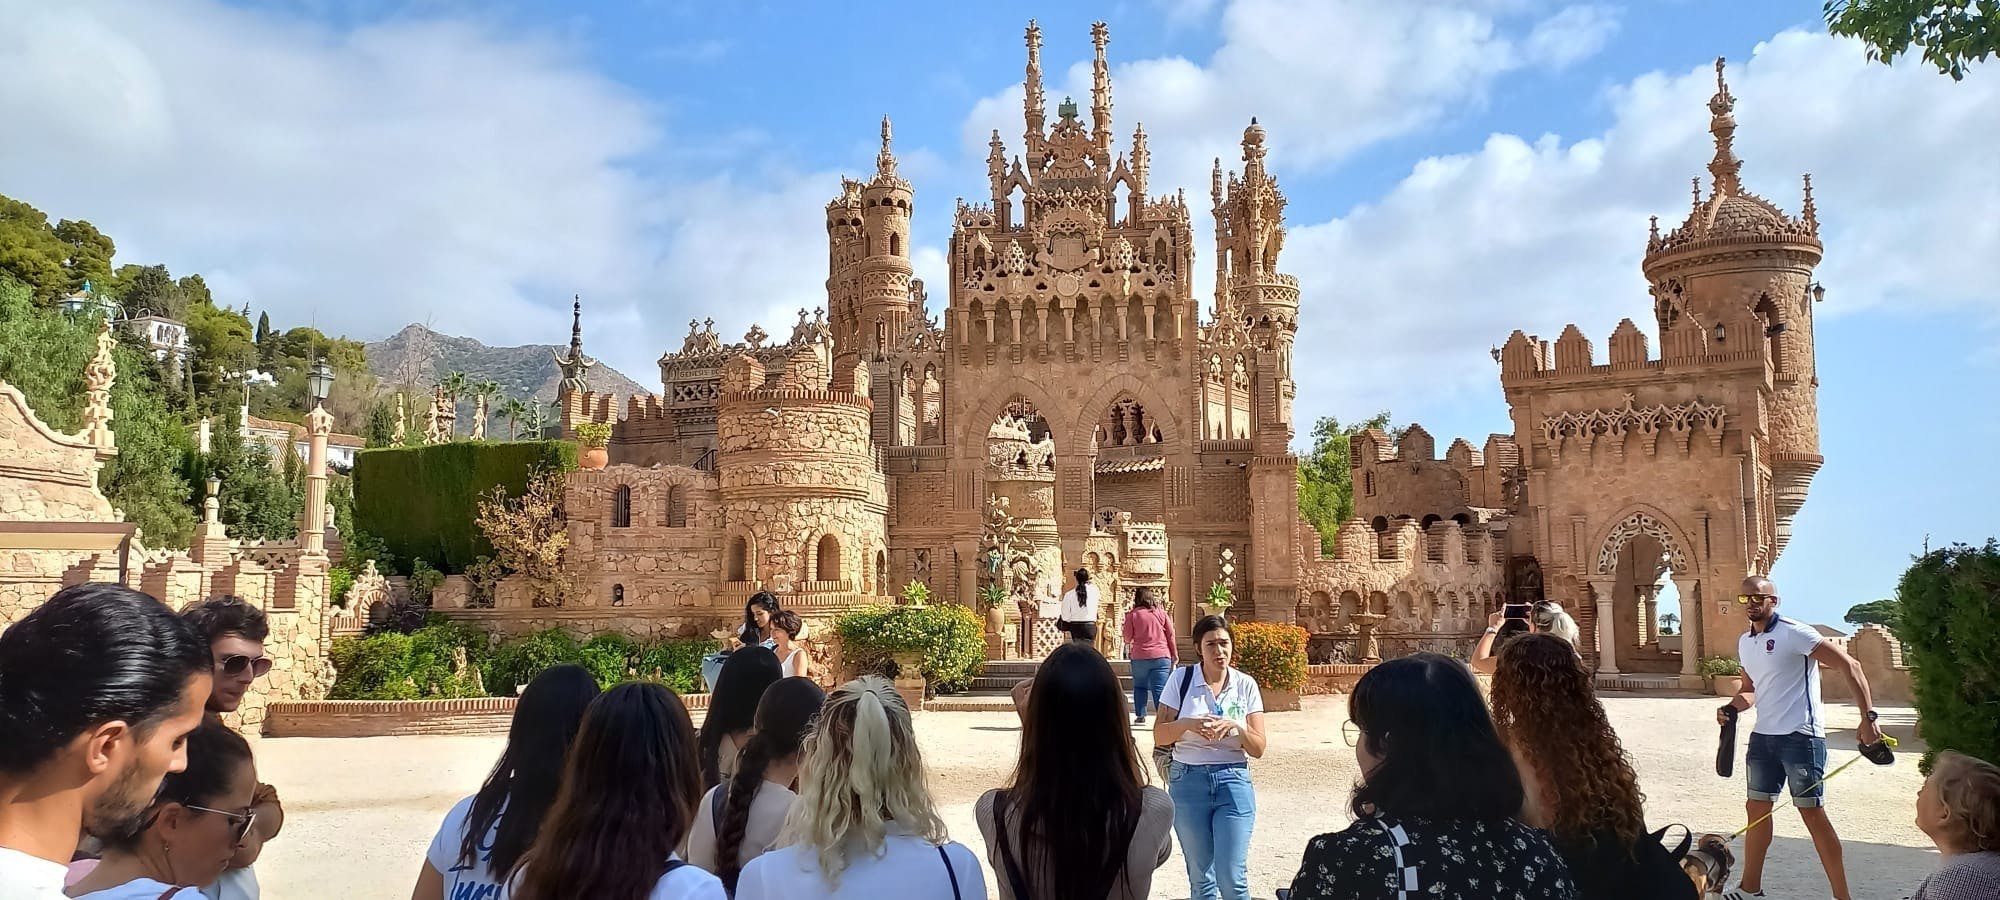 Rondleiding met kleine groepen door Castillo de Colomares